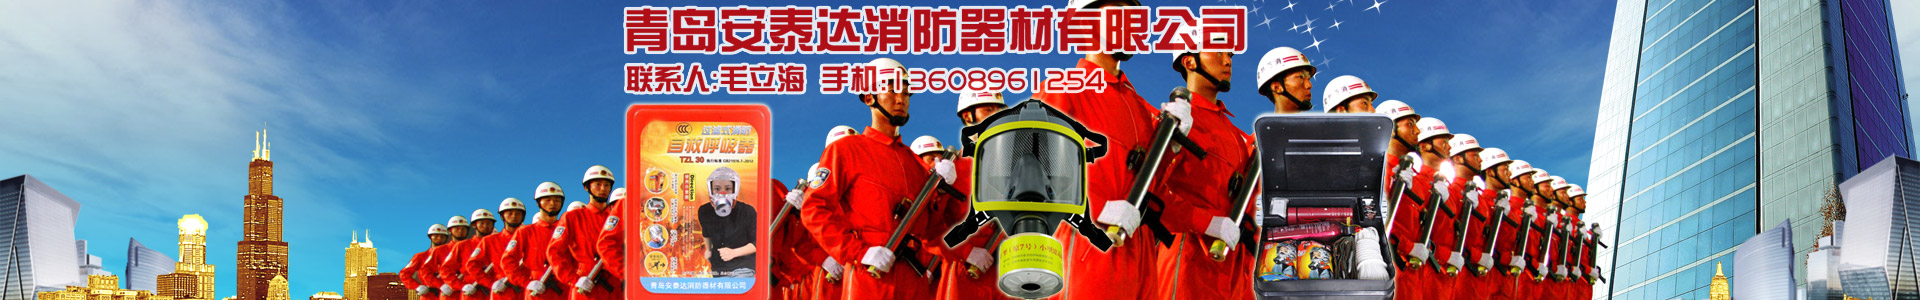 電動試壓泵-維修設備-青島安泰達消防器材有限公司-